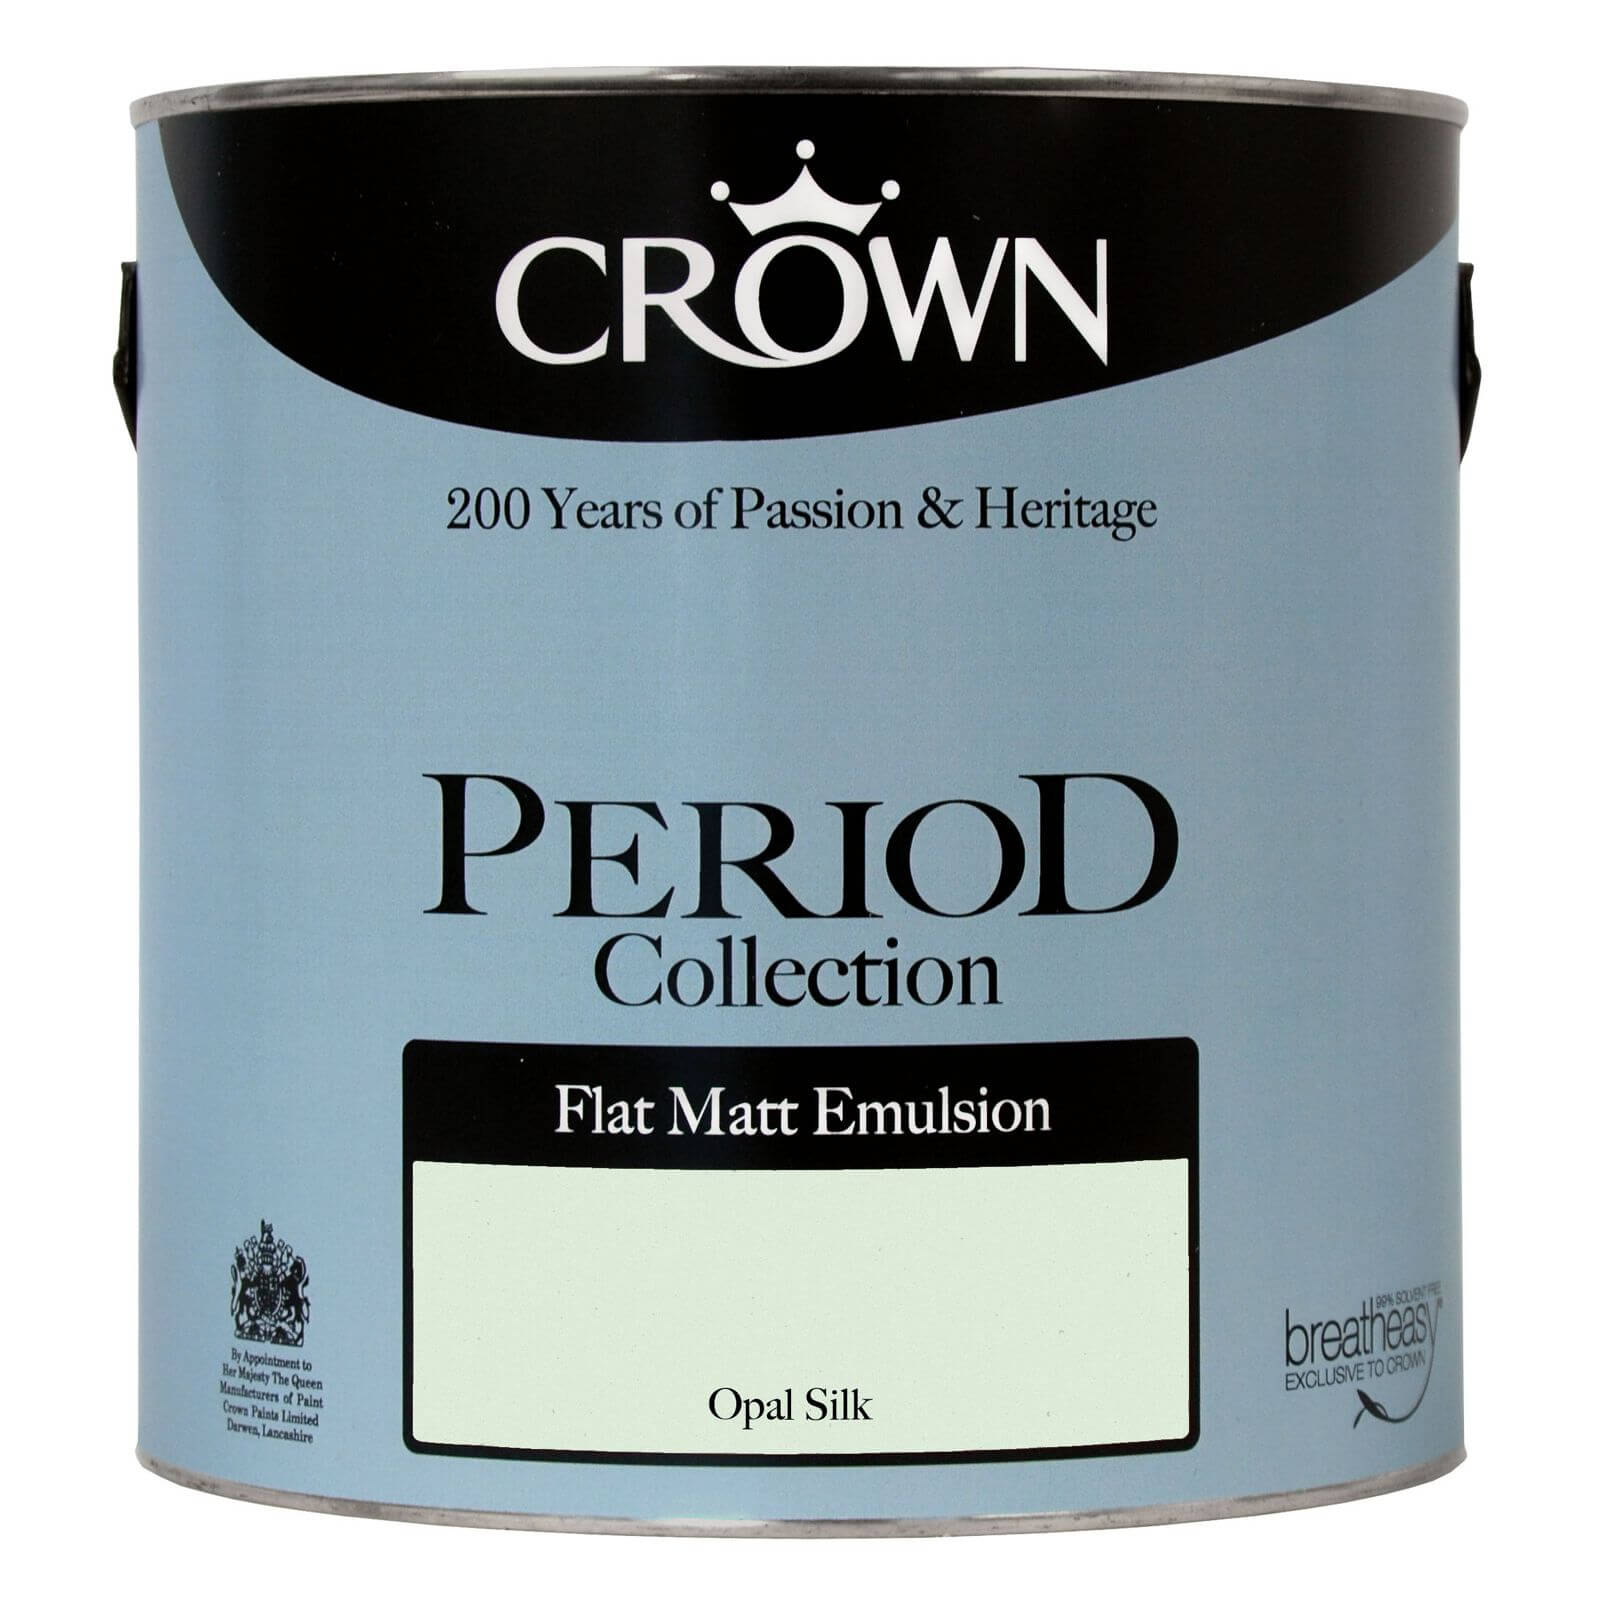 Crown Period Collection Opal Silk - Flat Matt Emulsion Paint - 2.5L